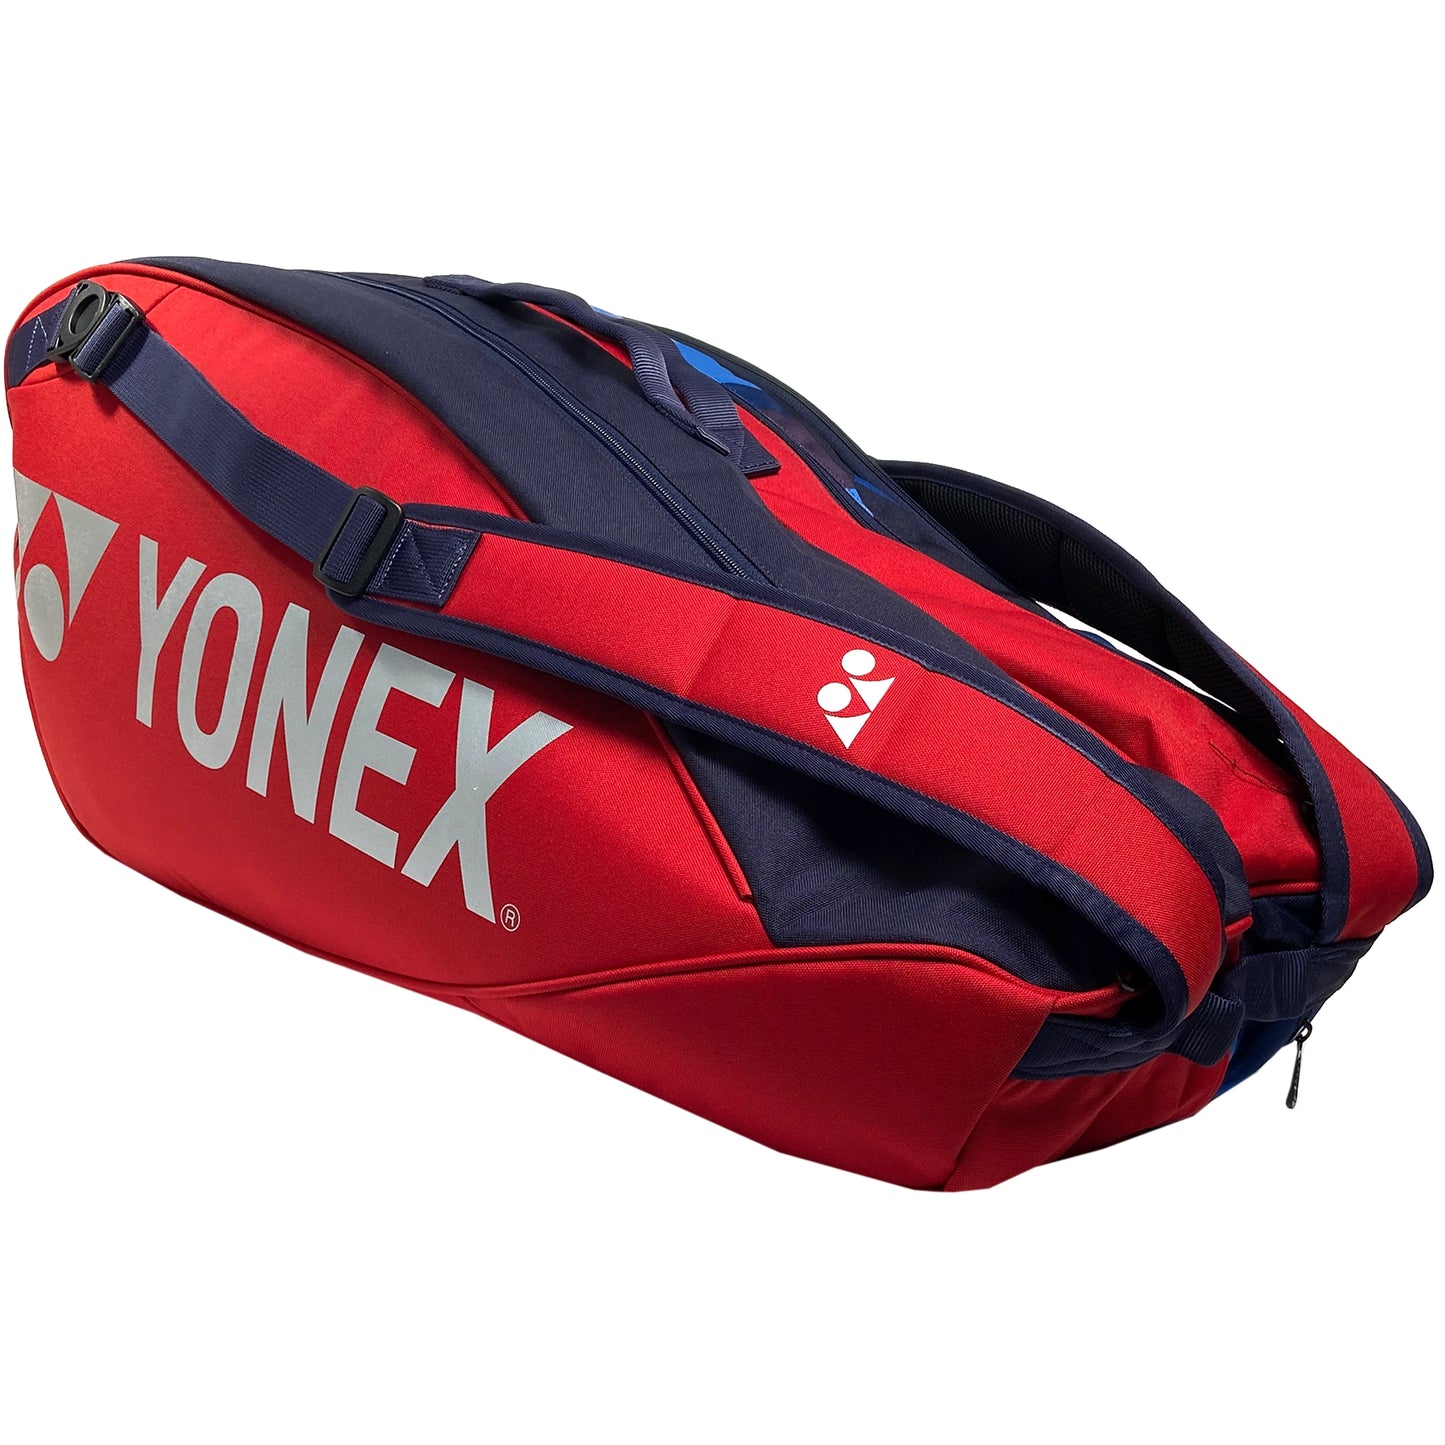 Yonex 6pk Pro Racquet Bag (92226EX) Scarlet